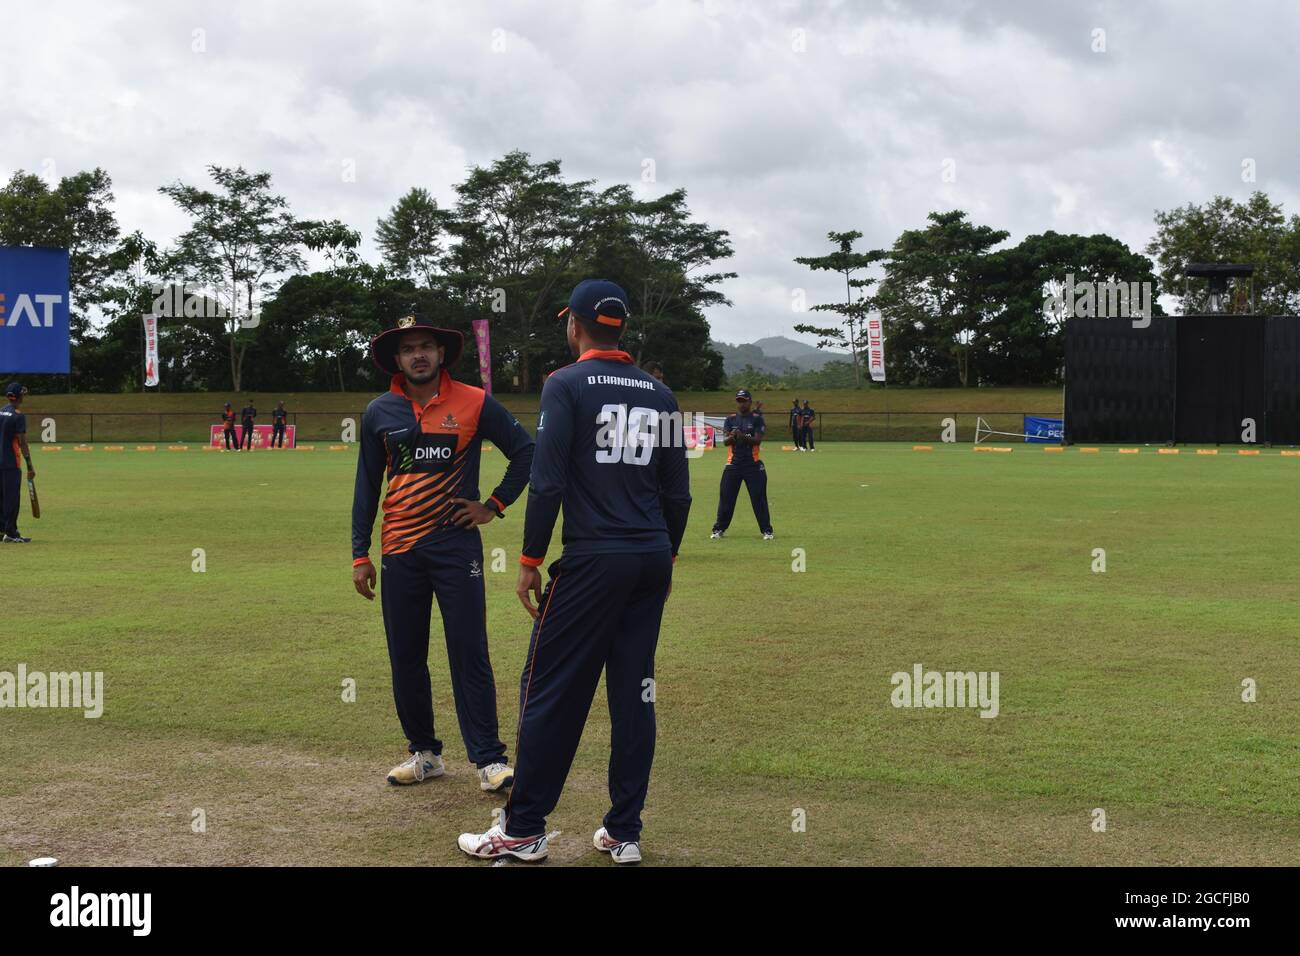 Les Cricketers sri-lankais Dinesh Chandimal et Angelo Perera ayant une discussion. Le pittoresque terrain de cricket de l'Army Ordinance. Dombagode. Sri Lanka. Banque D'Images